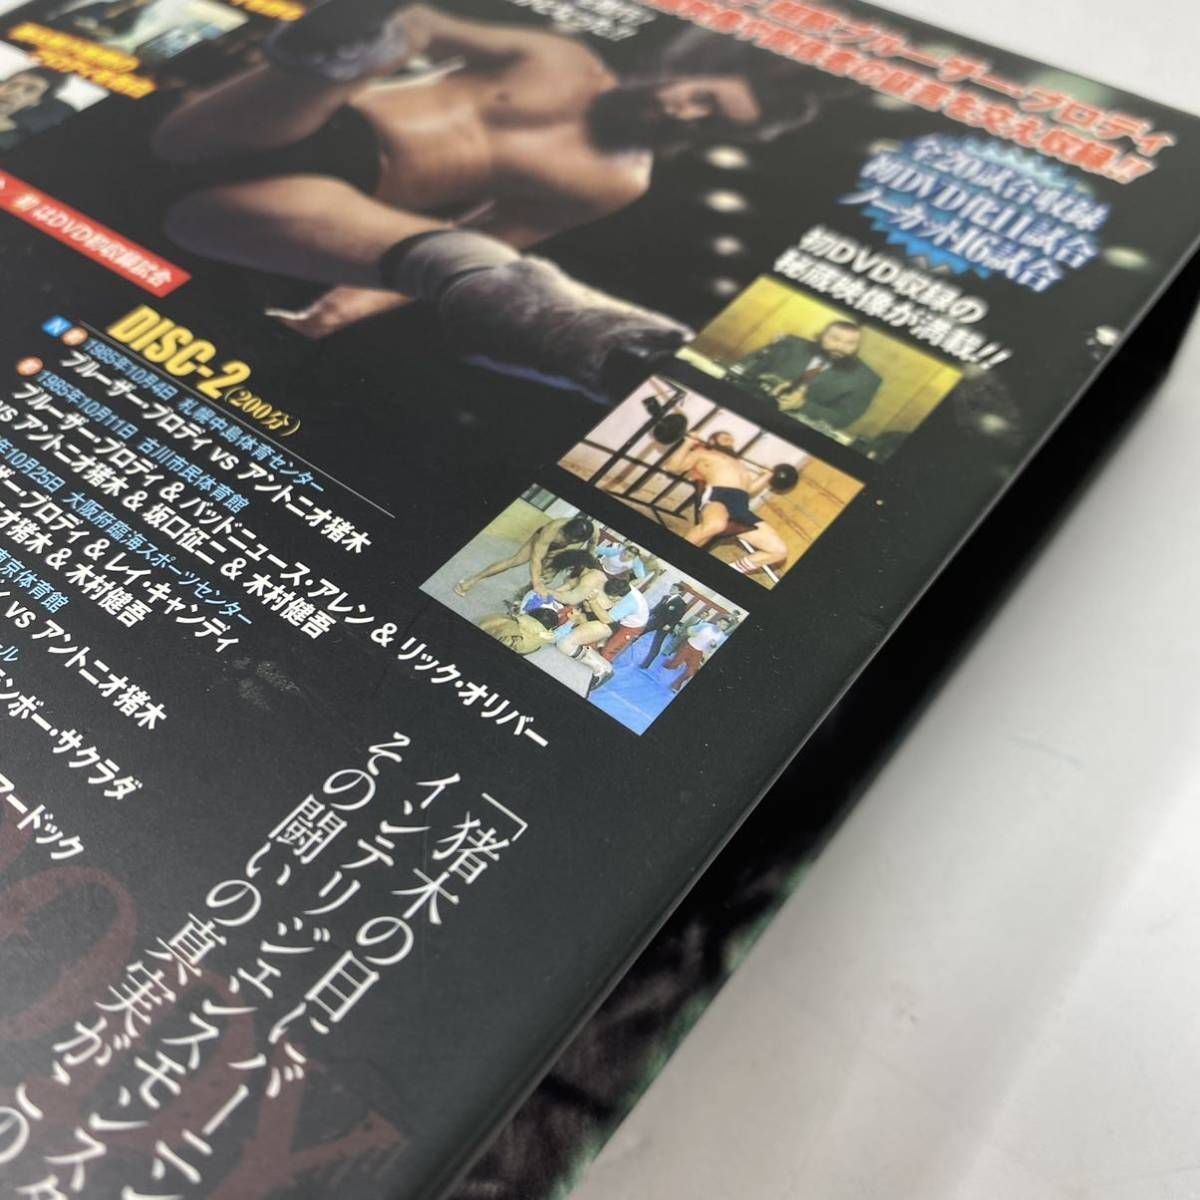 ブルーザー・ブロディ/新日本プロレスリング 最強外国人シリーズ 超獣伝説 ブル…新日本プロレス